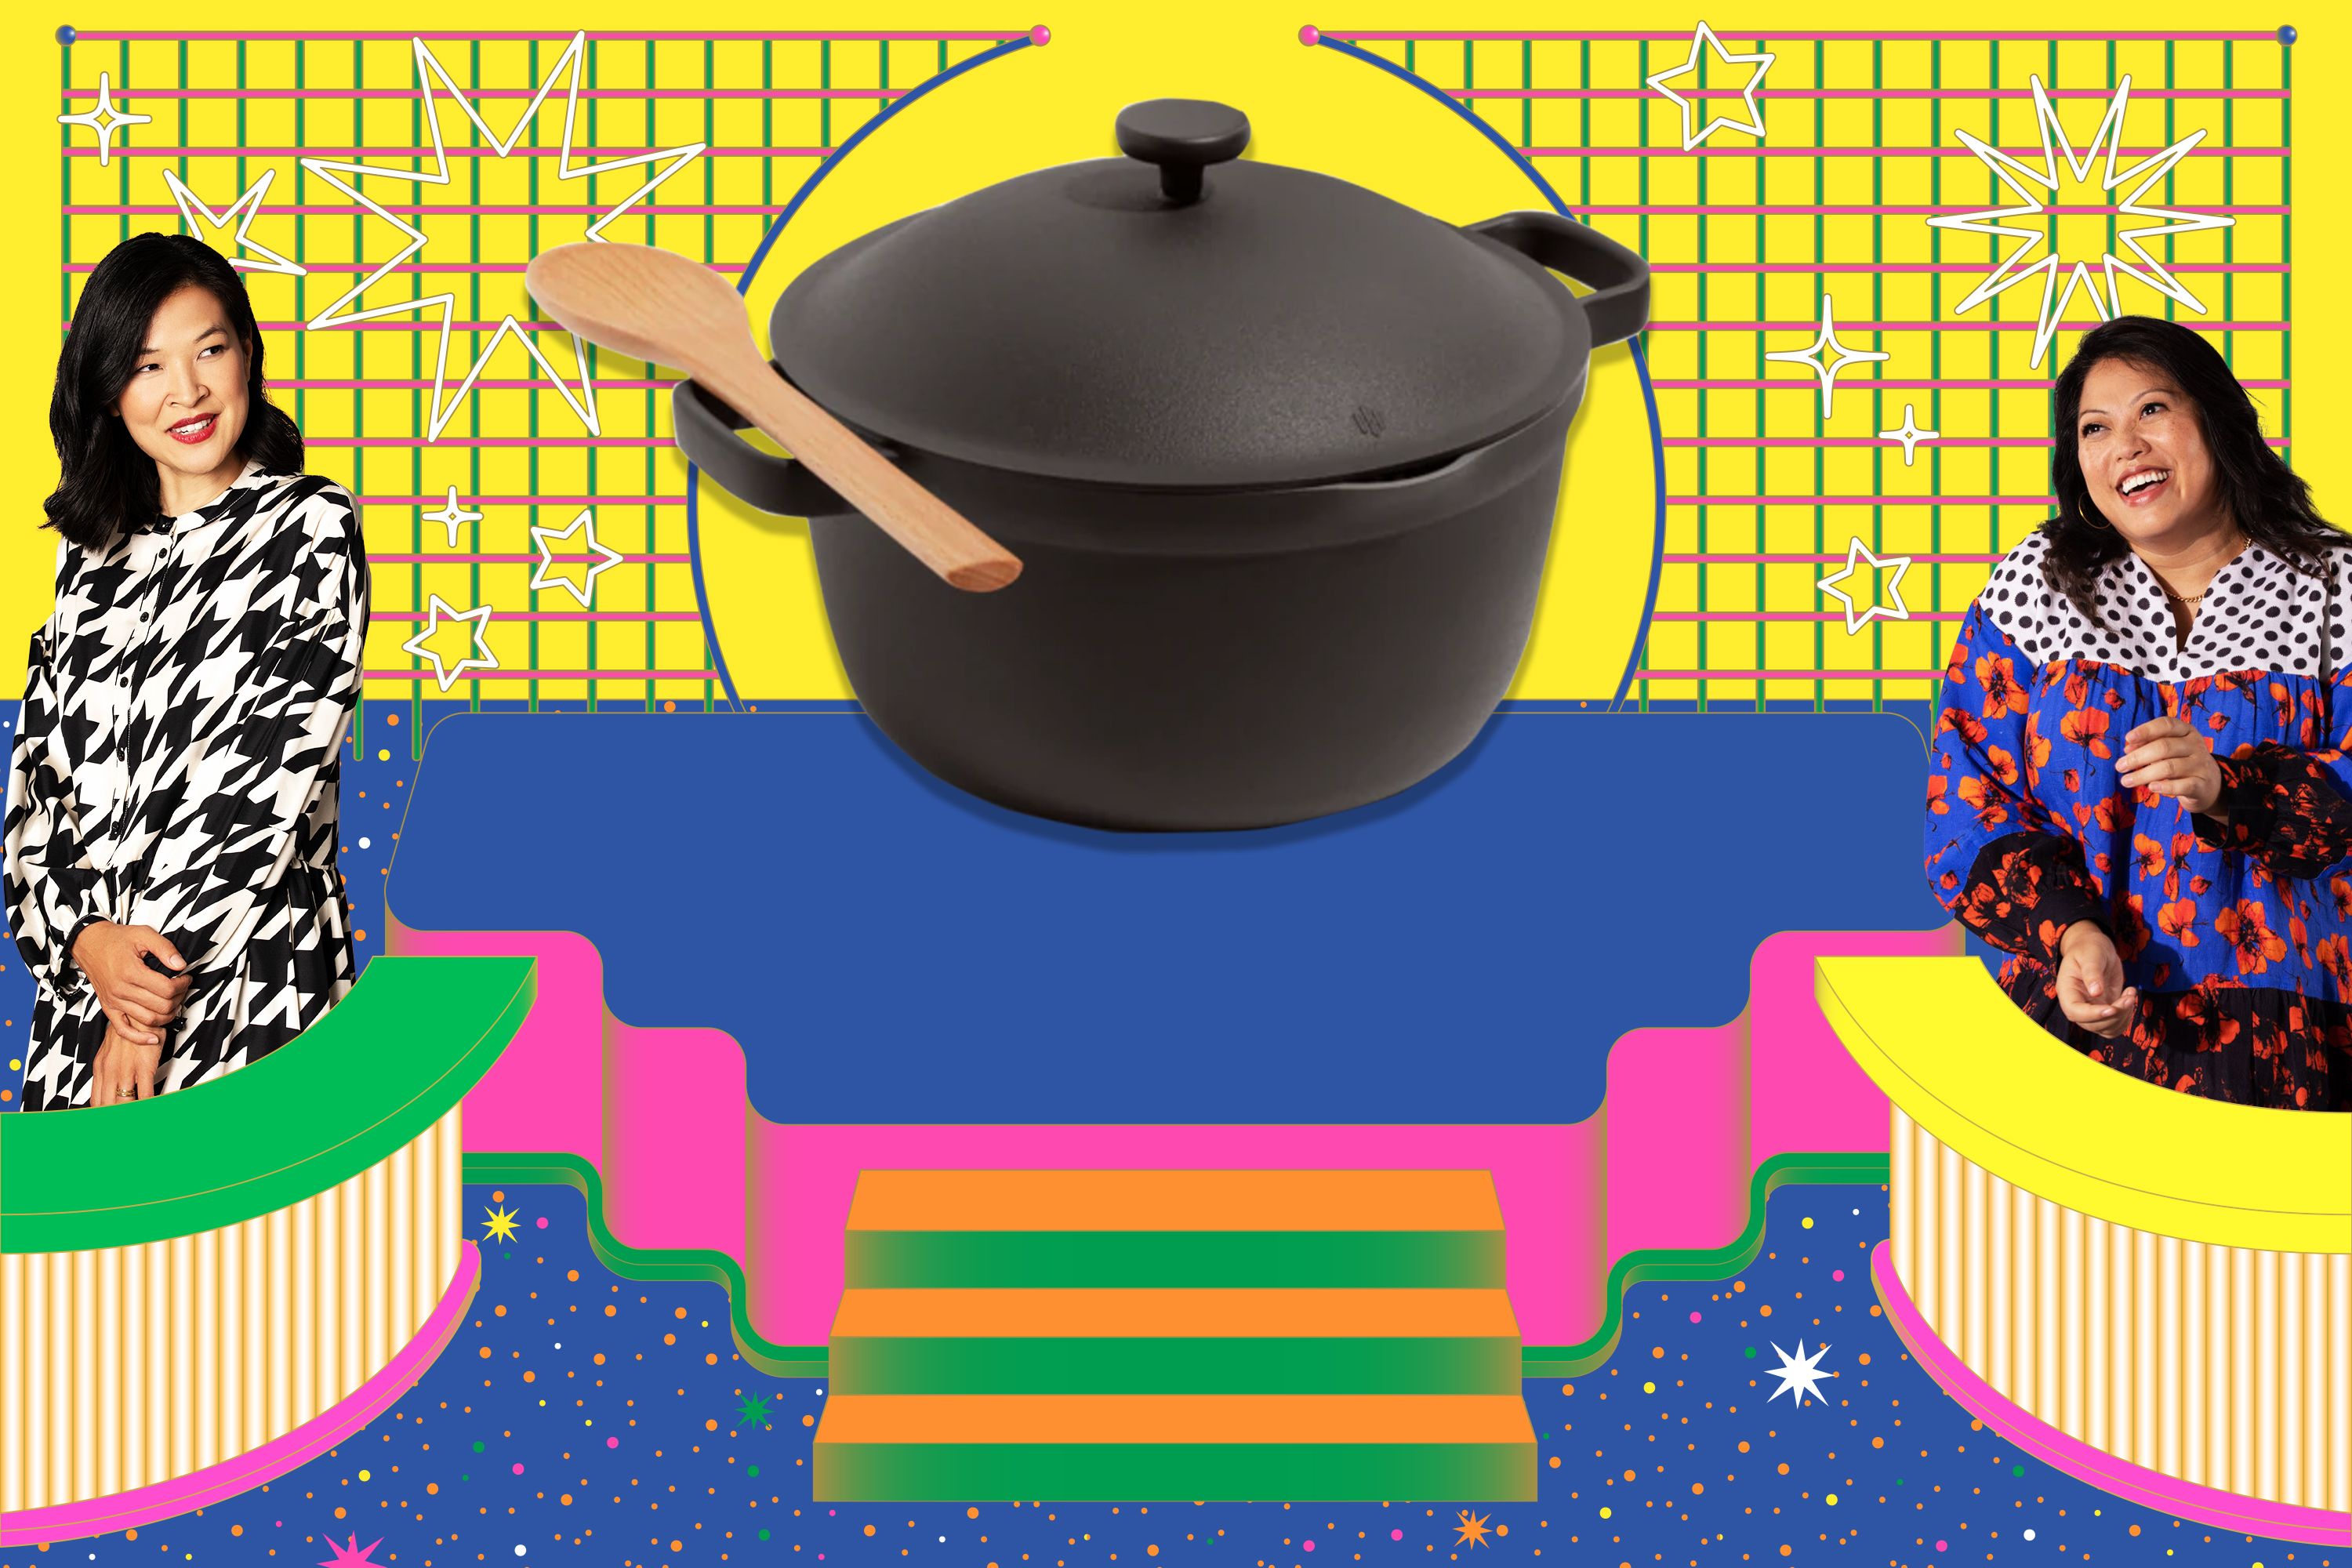 Ceramic Casserole Korean Cartoon Ceramics Soup Pot Cute Pink Saucepan  Cookware Utensils Clay Pan Home Kitchen Cooking Supplies